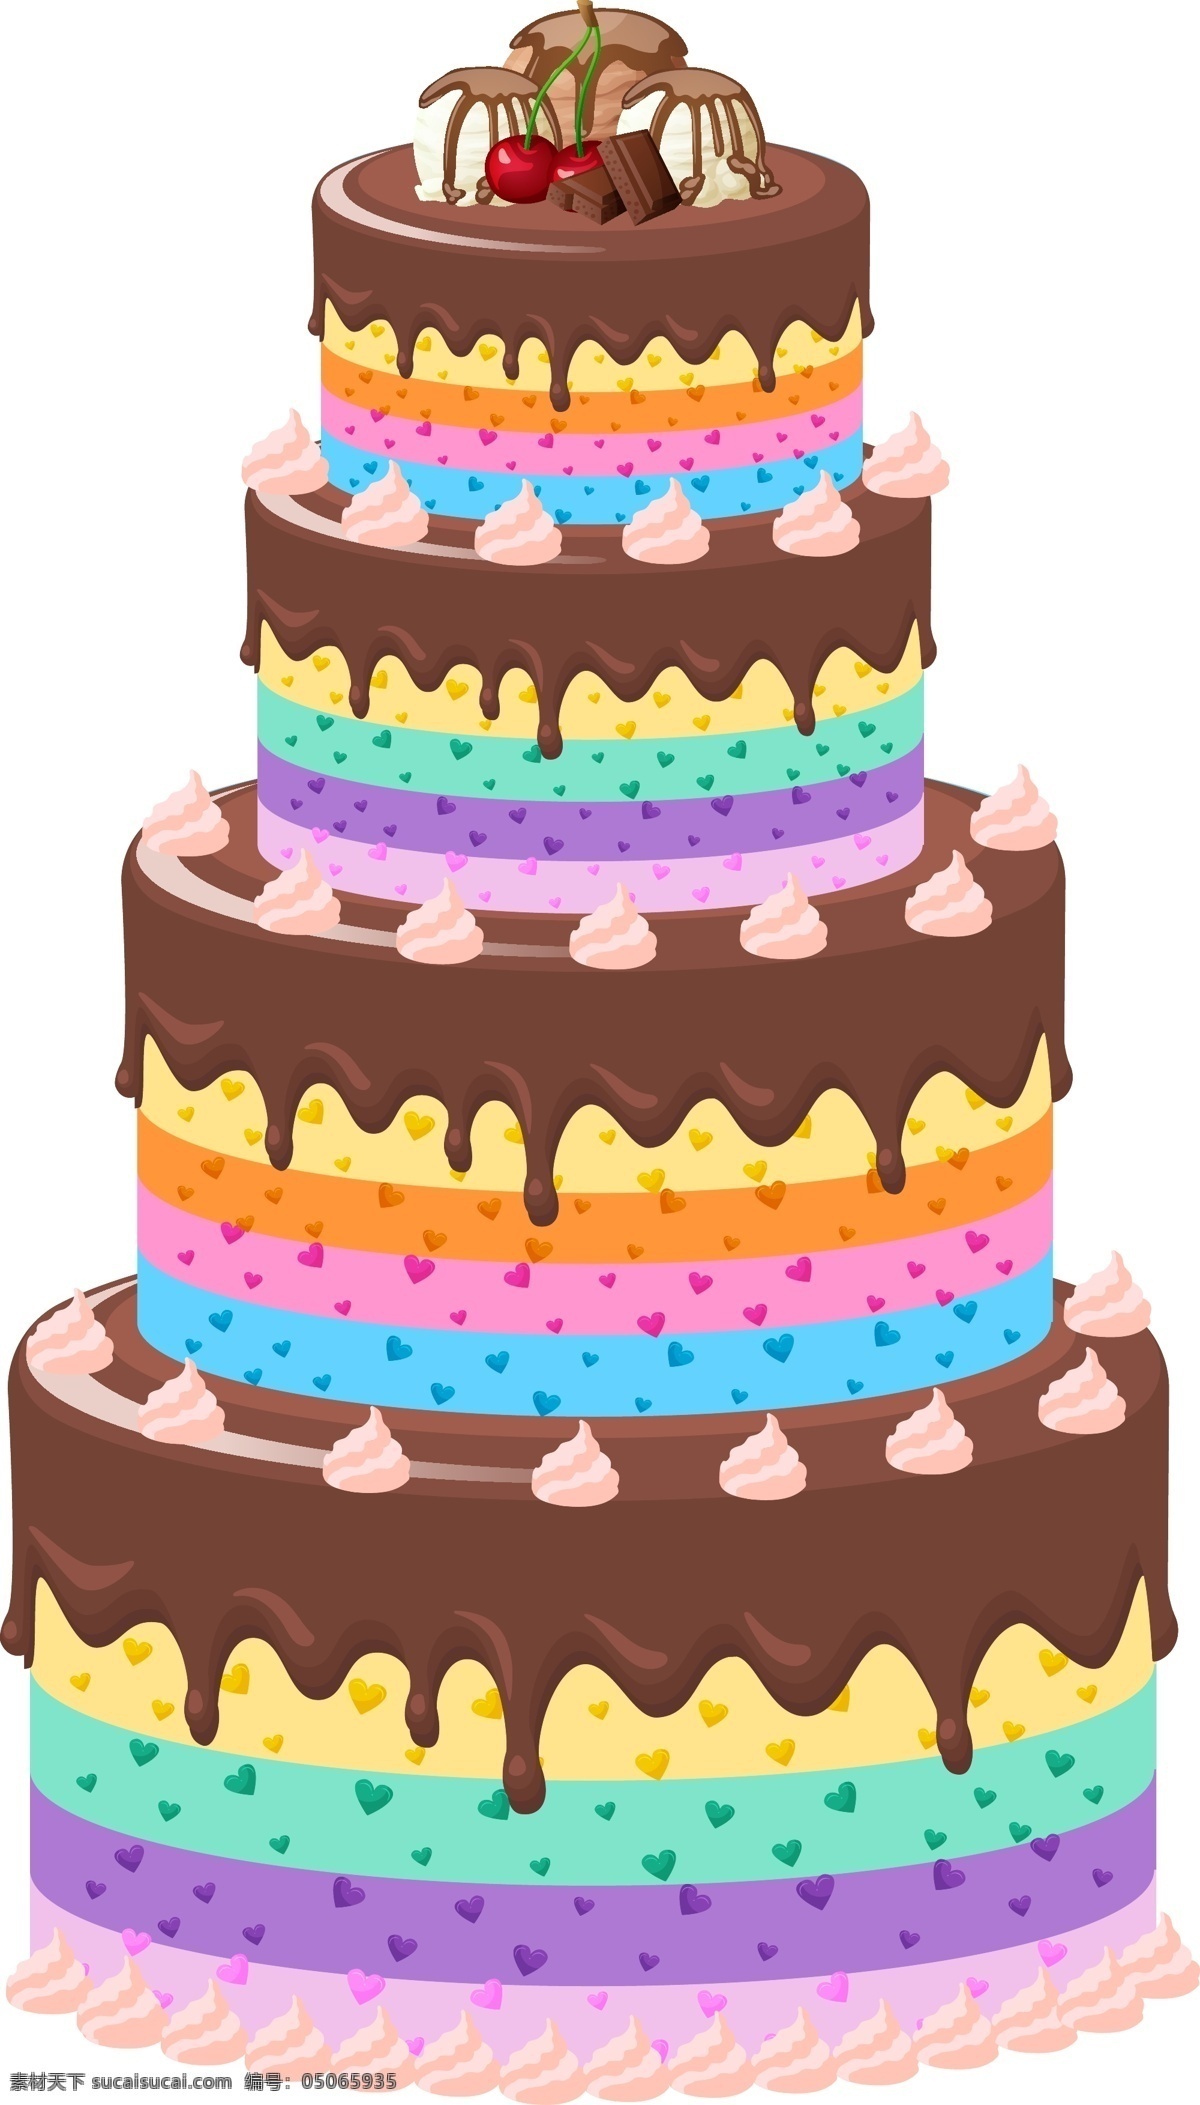 矢量 手绘 卡通 蛋糕 生日贺卡 生日海报 甜品 婚礼 卡通生日蛋糕 杯子蛋糕 手绘生日蛋糕 蛋糕设计 雕花蛋糕 节日蛋糕 儿童生日蛋糕 卡通蛋糕